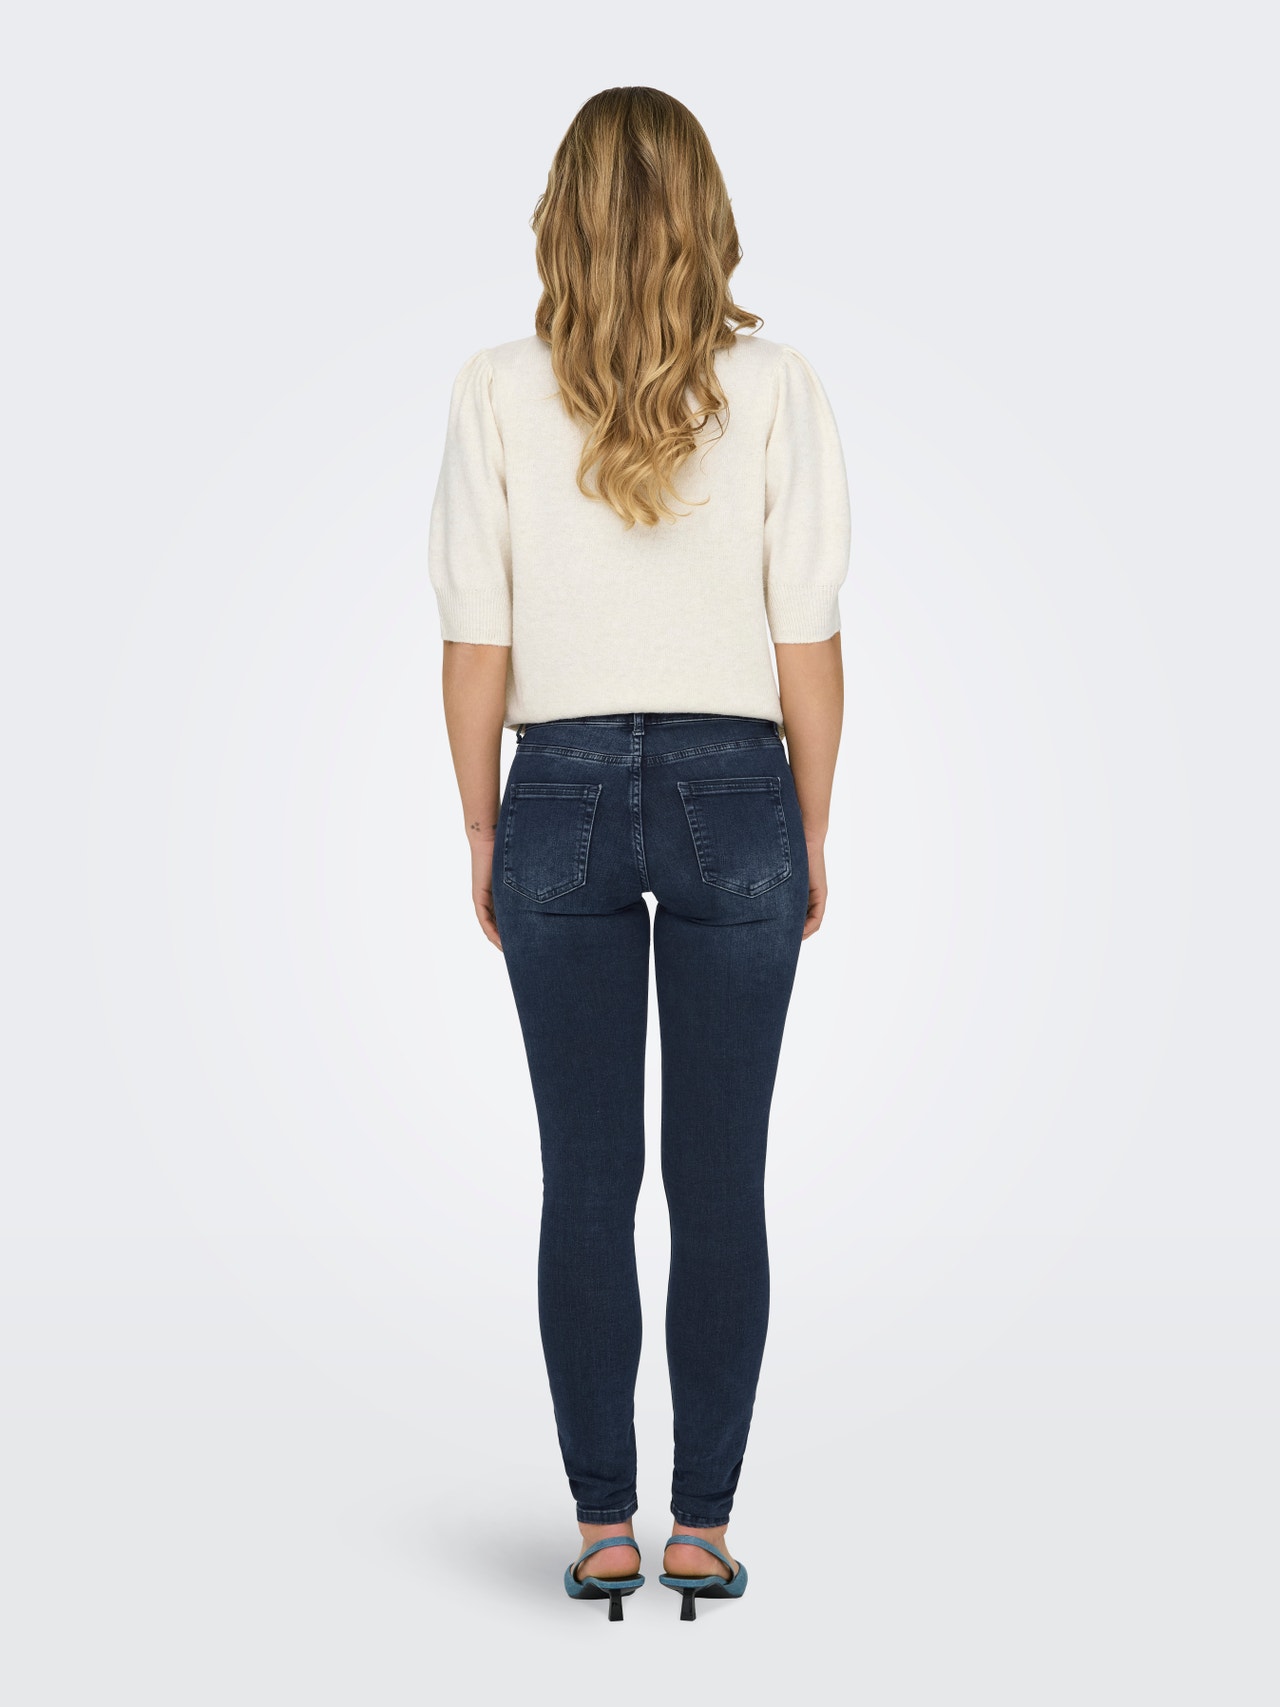 ONLY Krój skinny Średnia talia Jeans -Blue Black Denim - 15318738